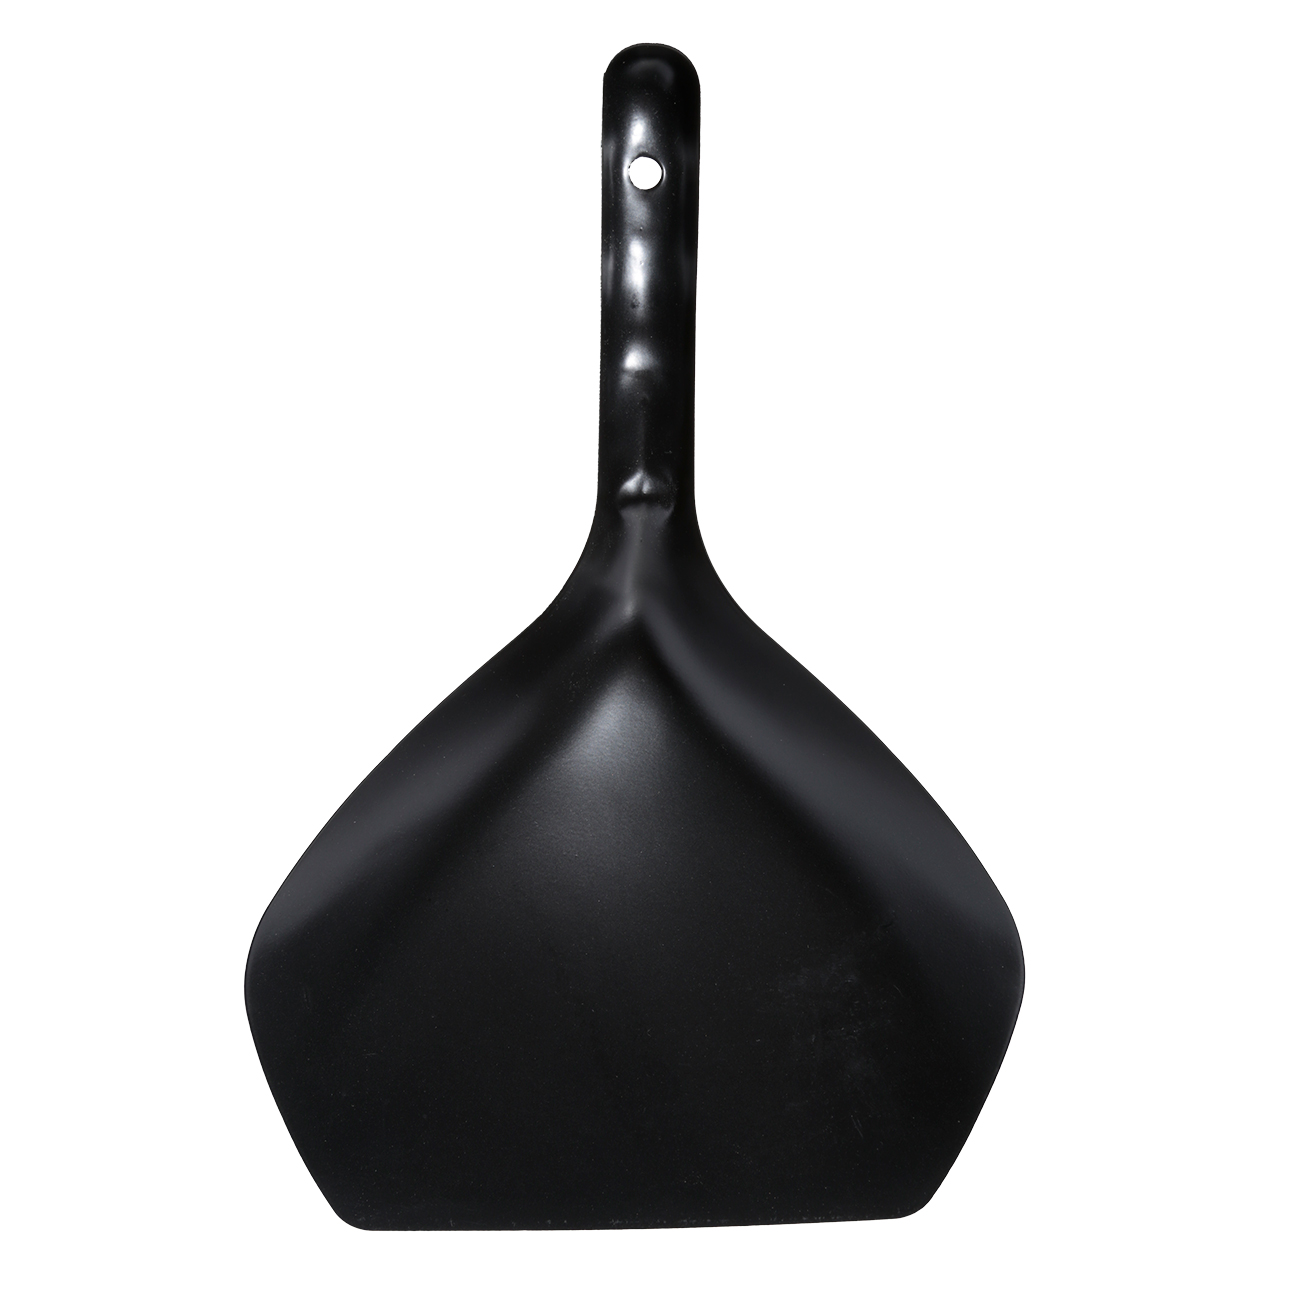 Щетка для мусора, с совком, 33 см, пластик/бамбук/сталь, черная, Black clean изображение № 2